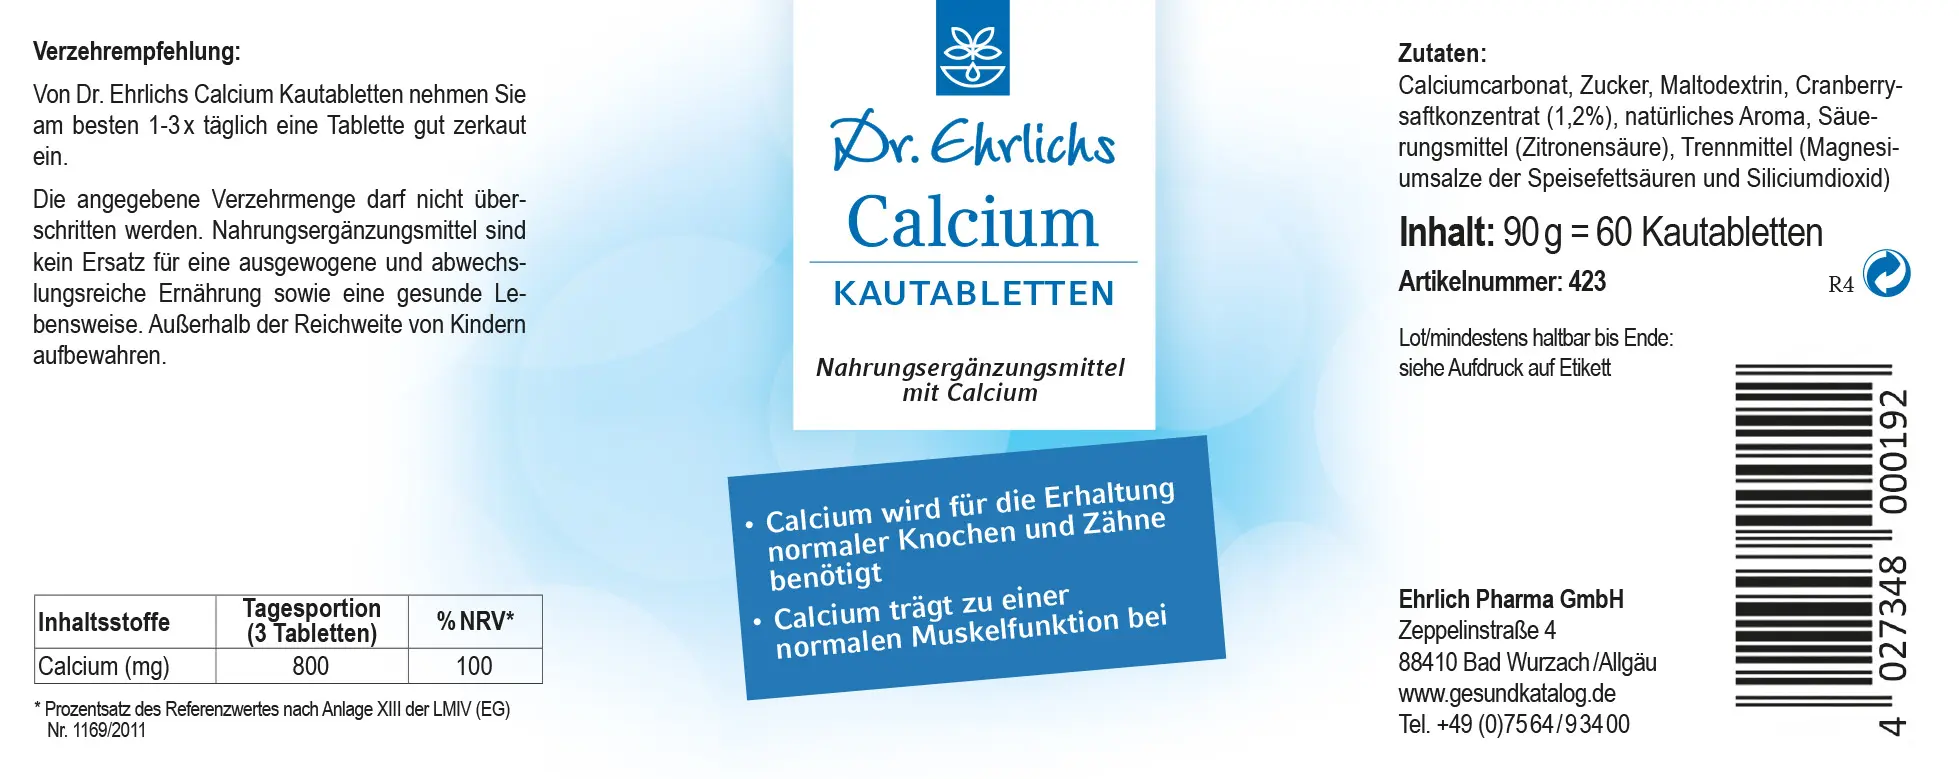 Dr. Ehrlichs Calcium Kautabletten - 60 Stück